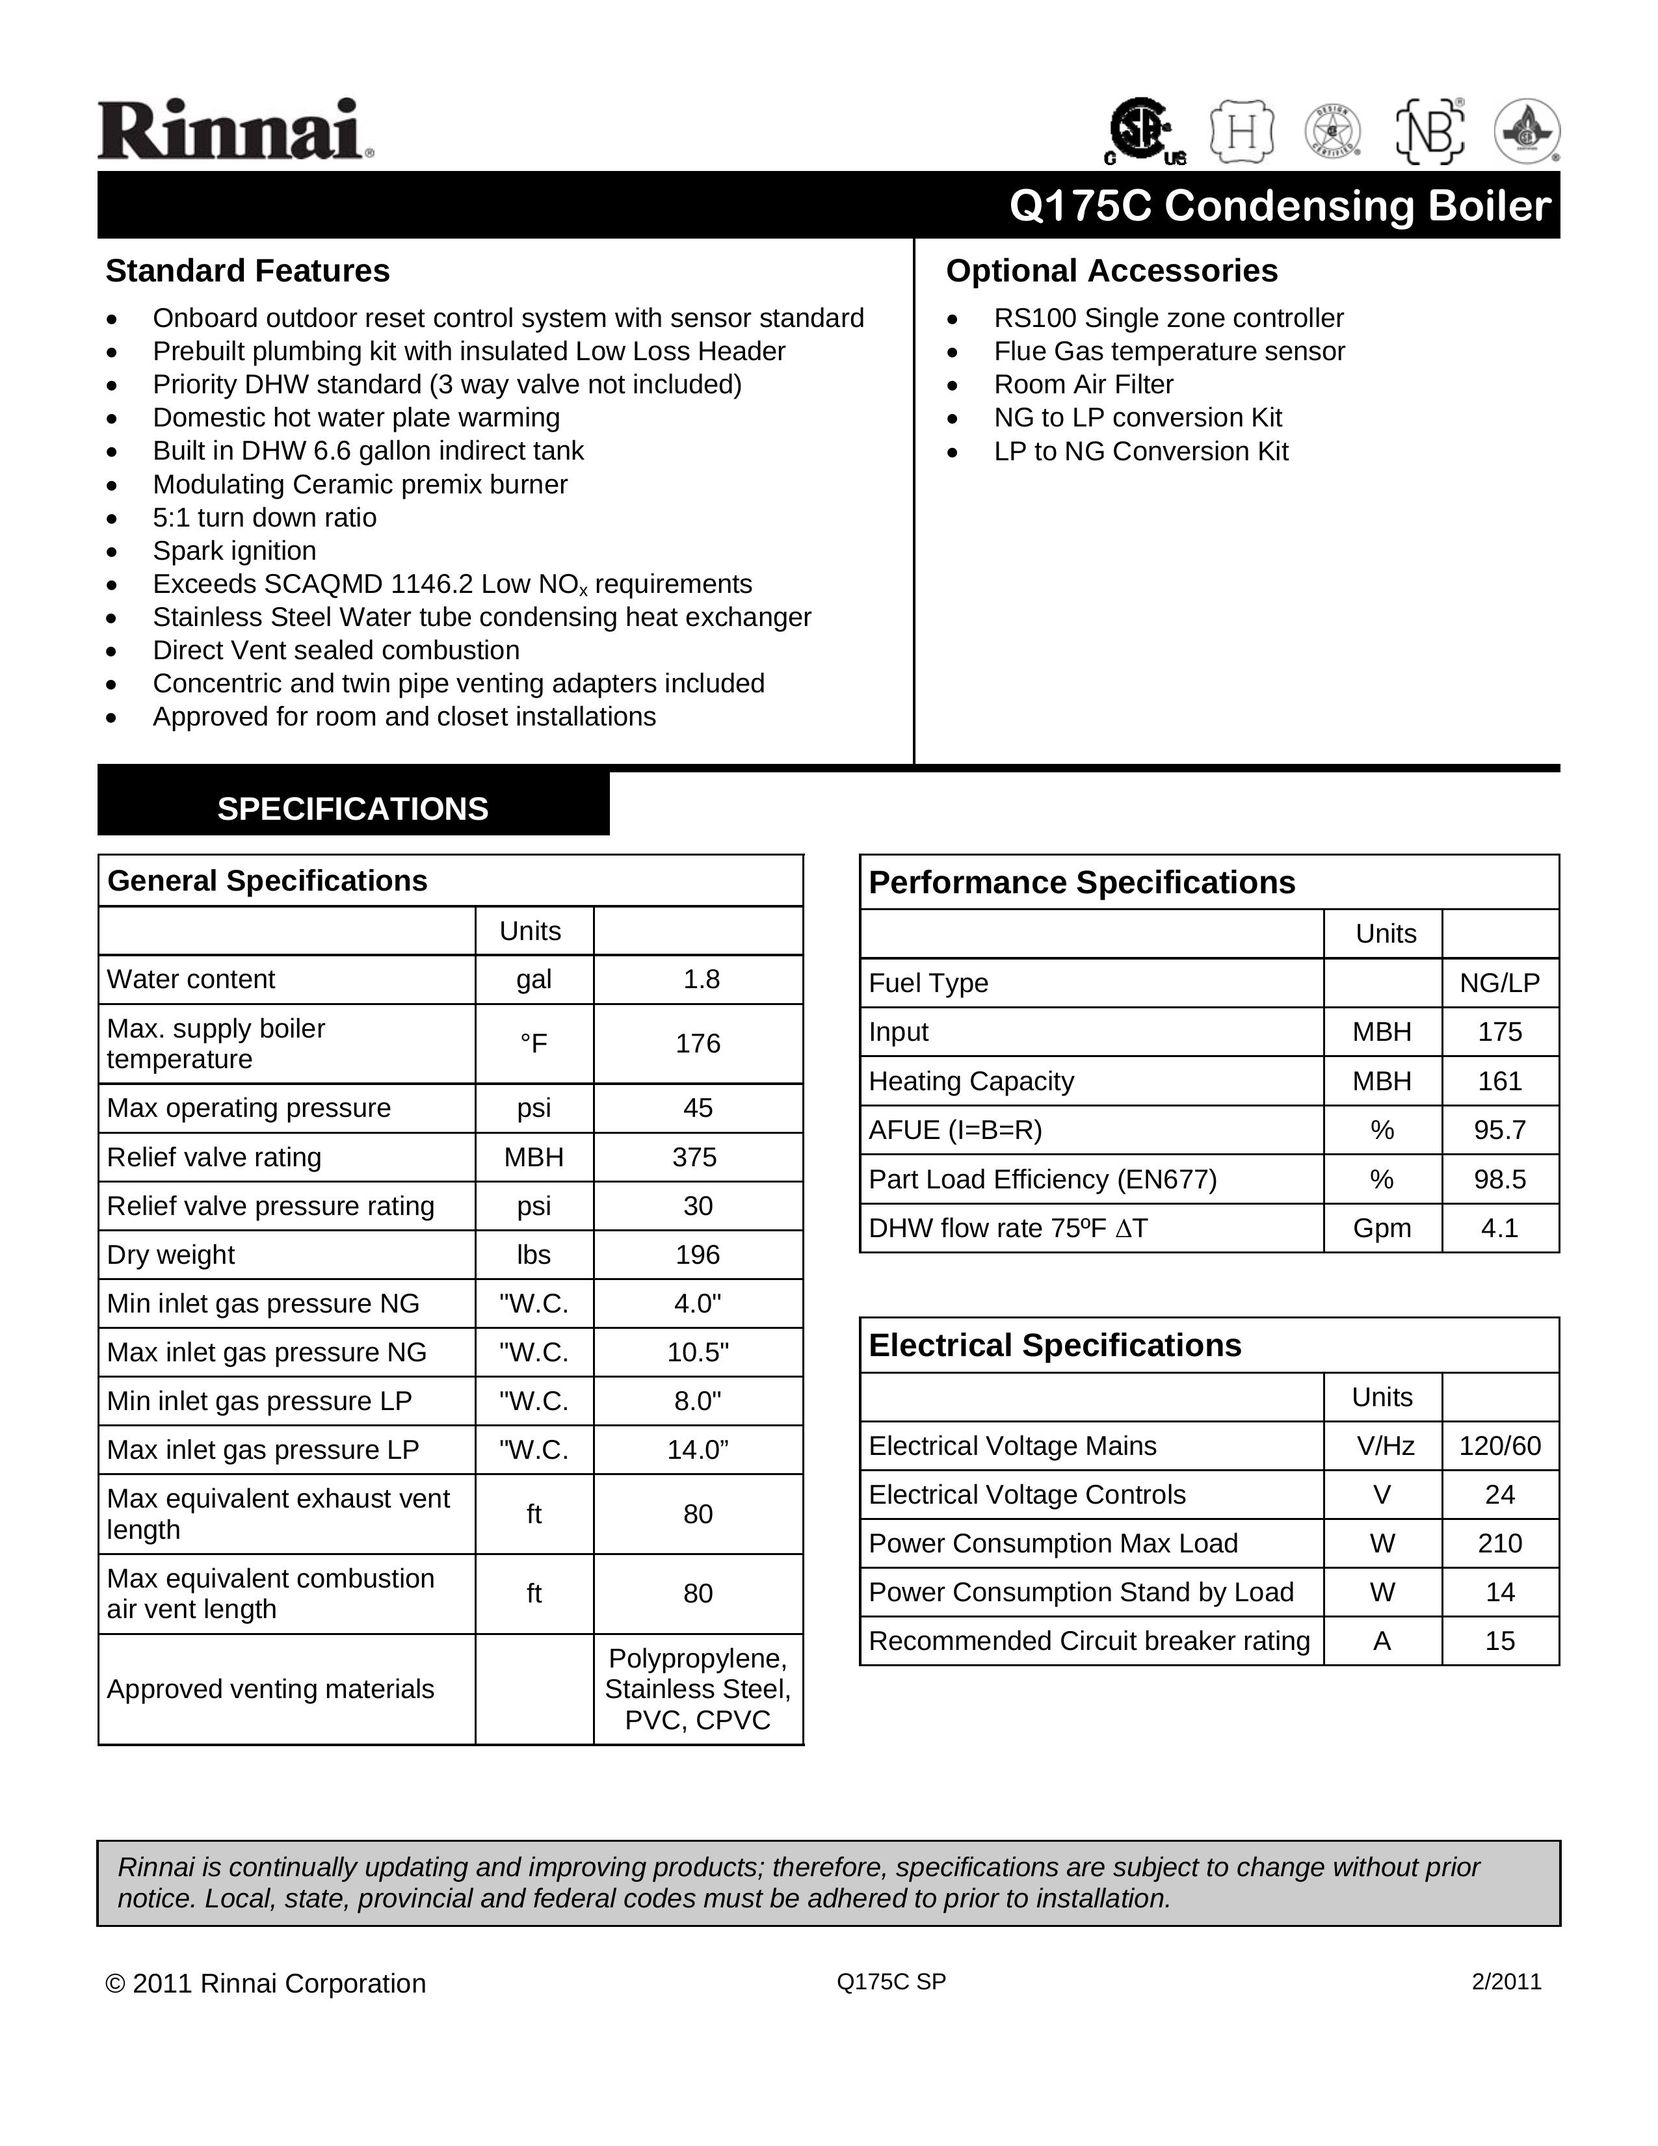 Rinnai Q175C Boiler User Manual